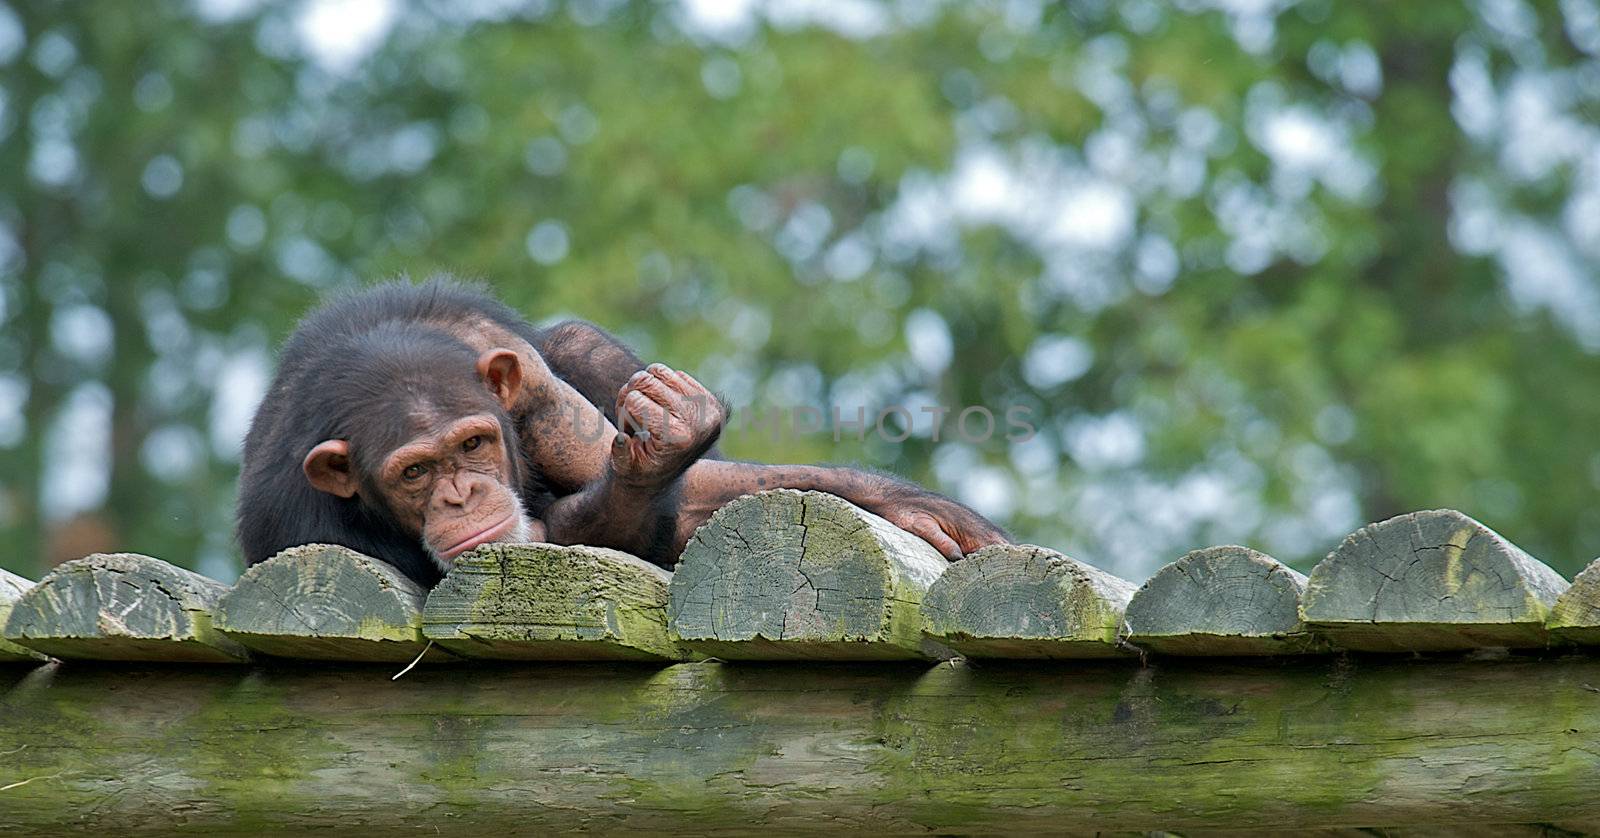 Chimpanzee  by dmvphotos